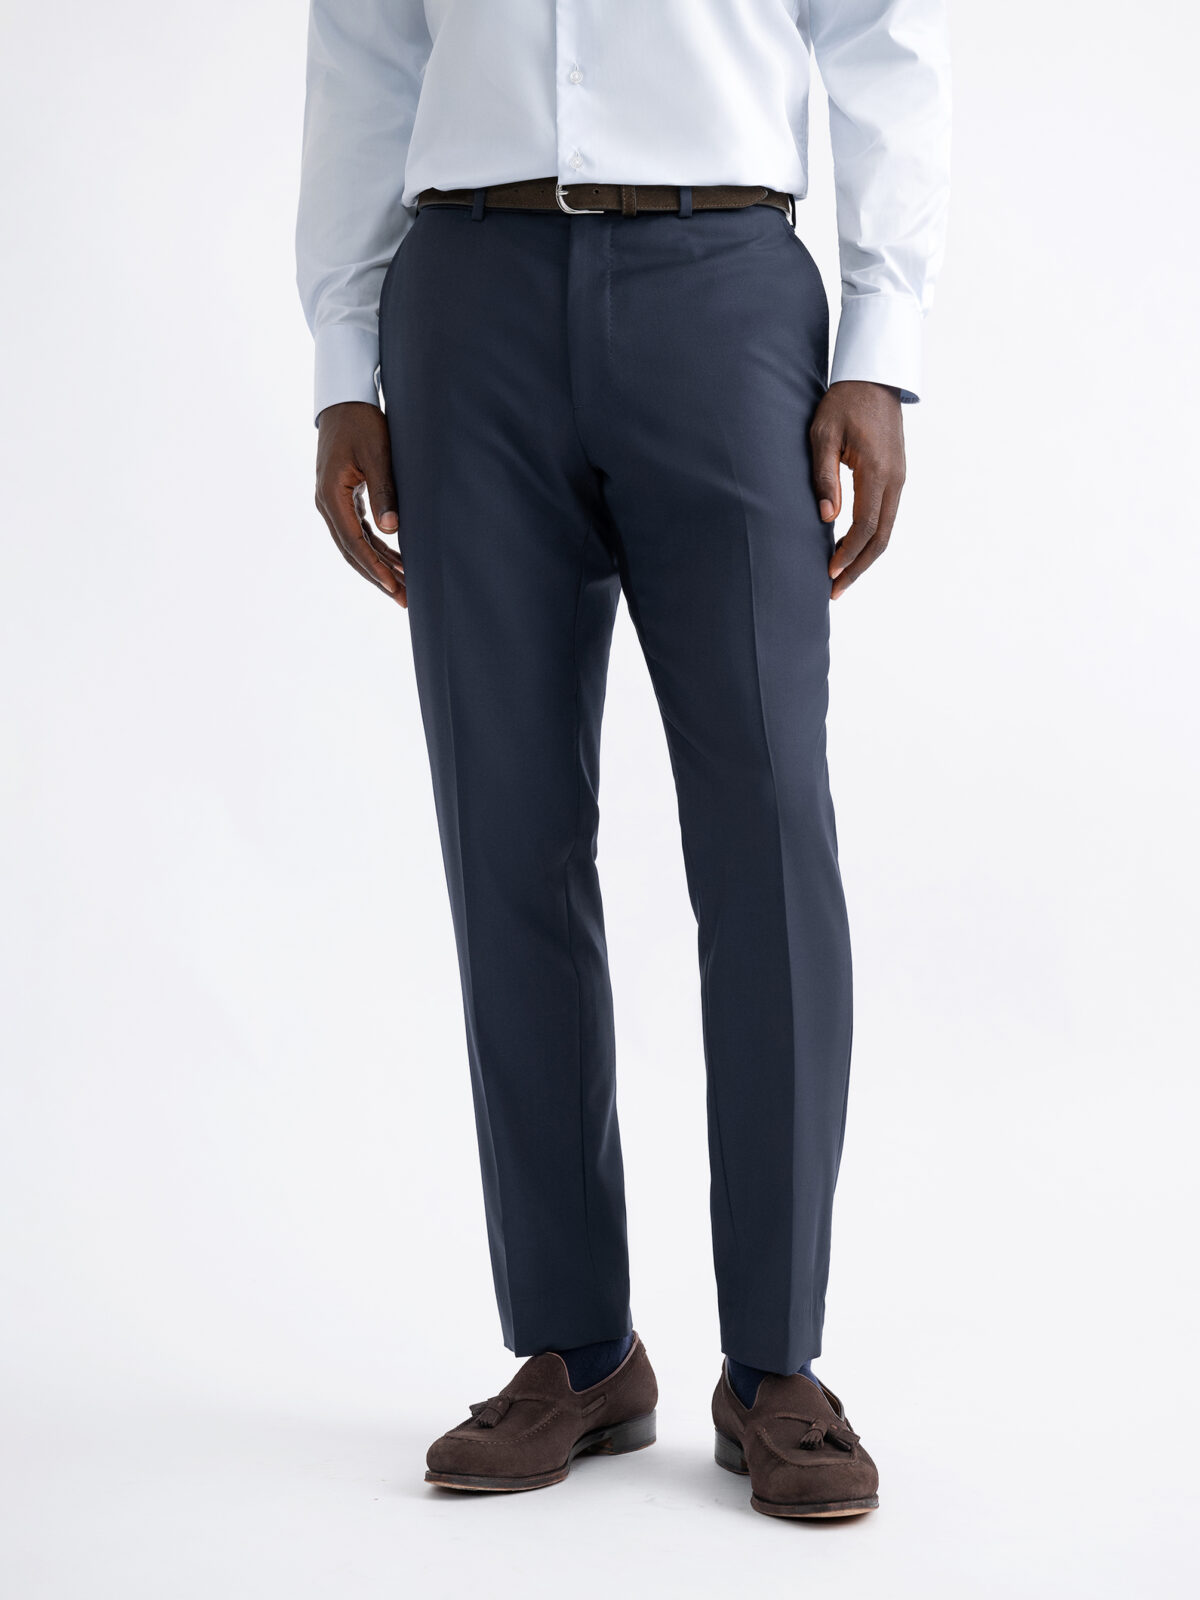 Buy Premium Trouser Fabric for Men